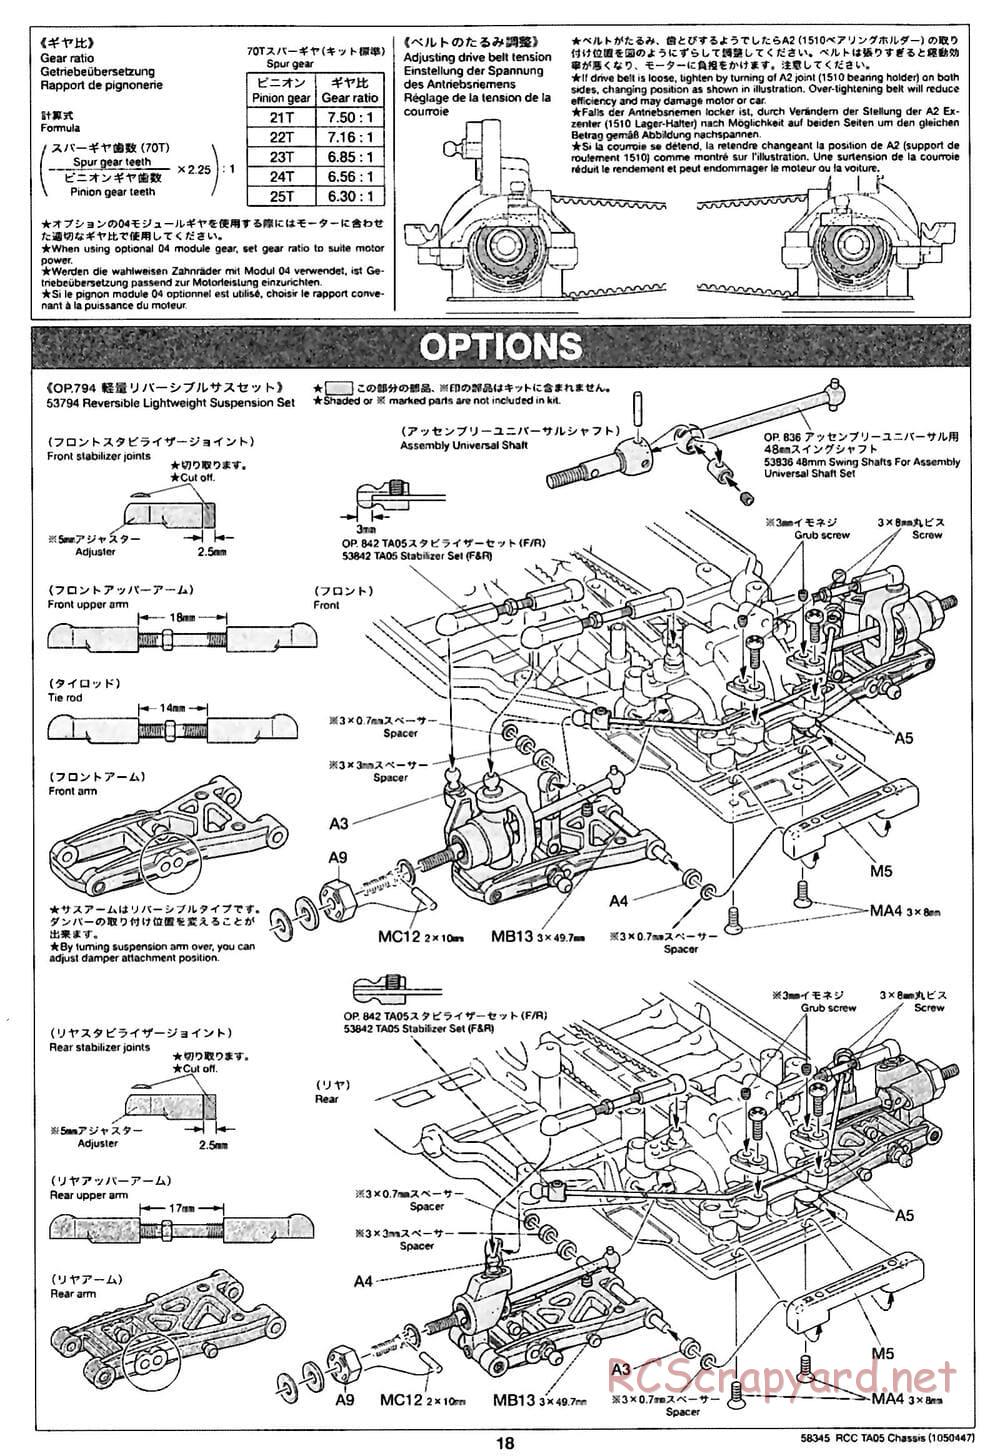 Tamiya - TA05 Chassis - Manual - Page 18